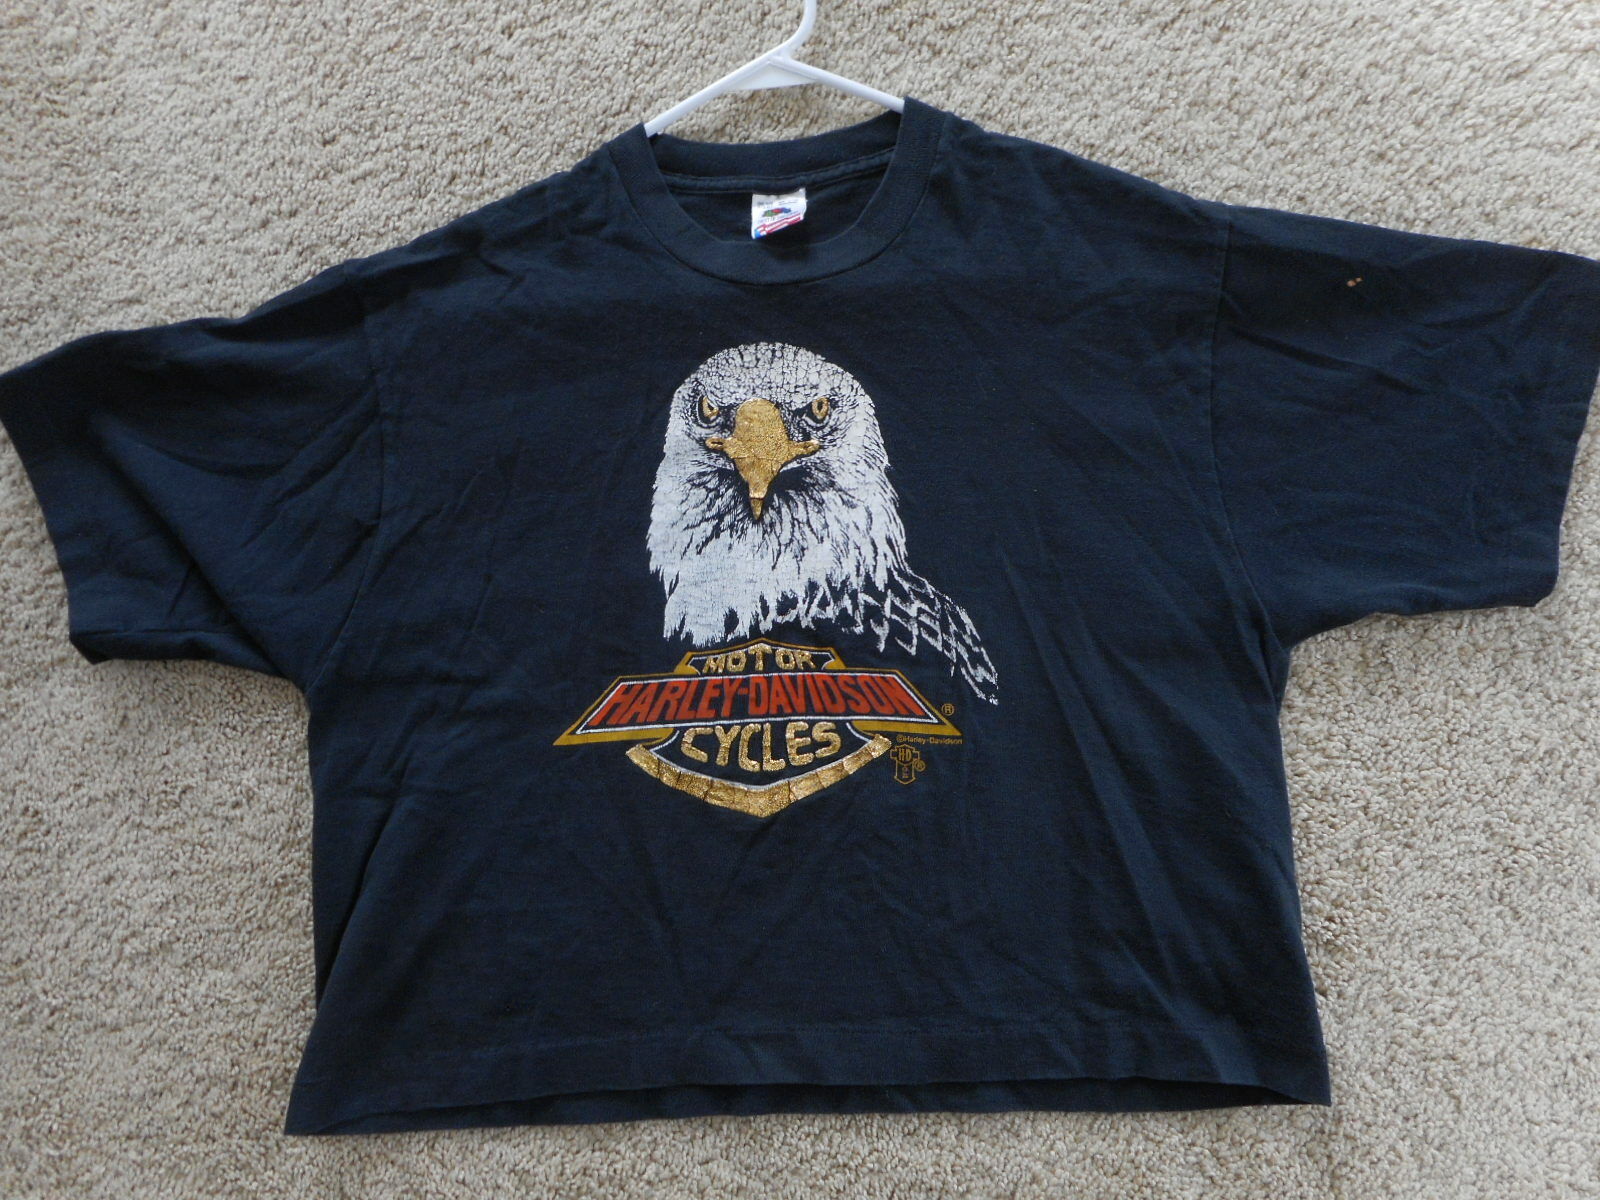 Vintage 1980's ? Harley Davidson Eagle Gold Sparkle Crop Top T-shirt Black Grung